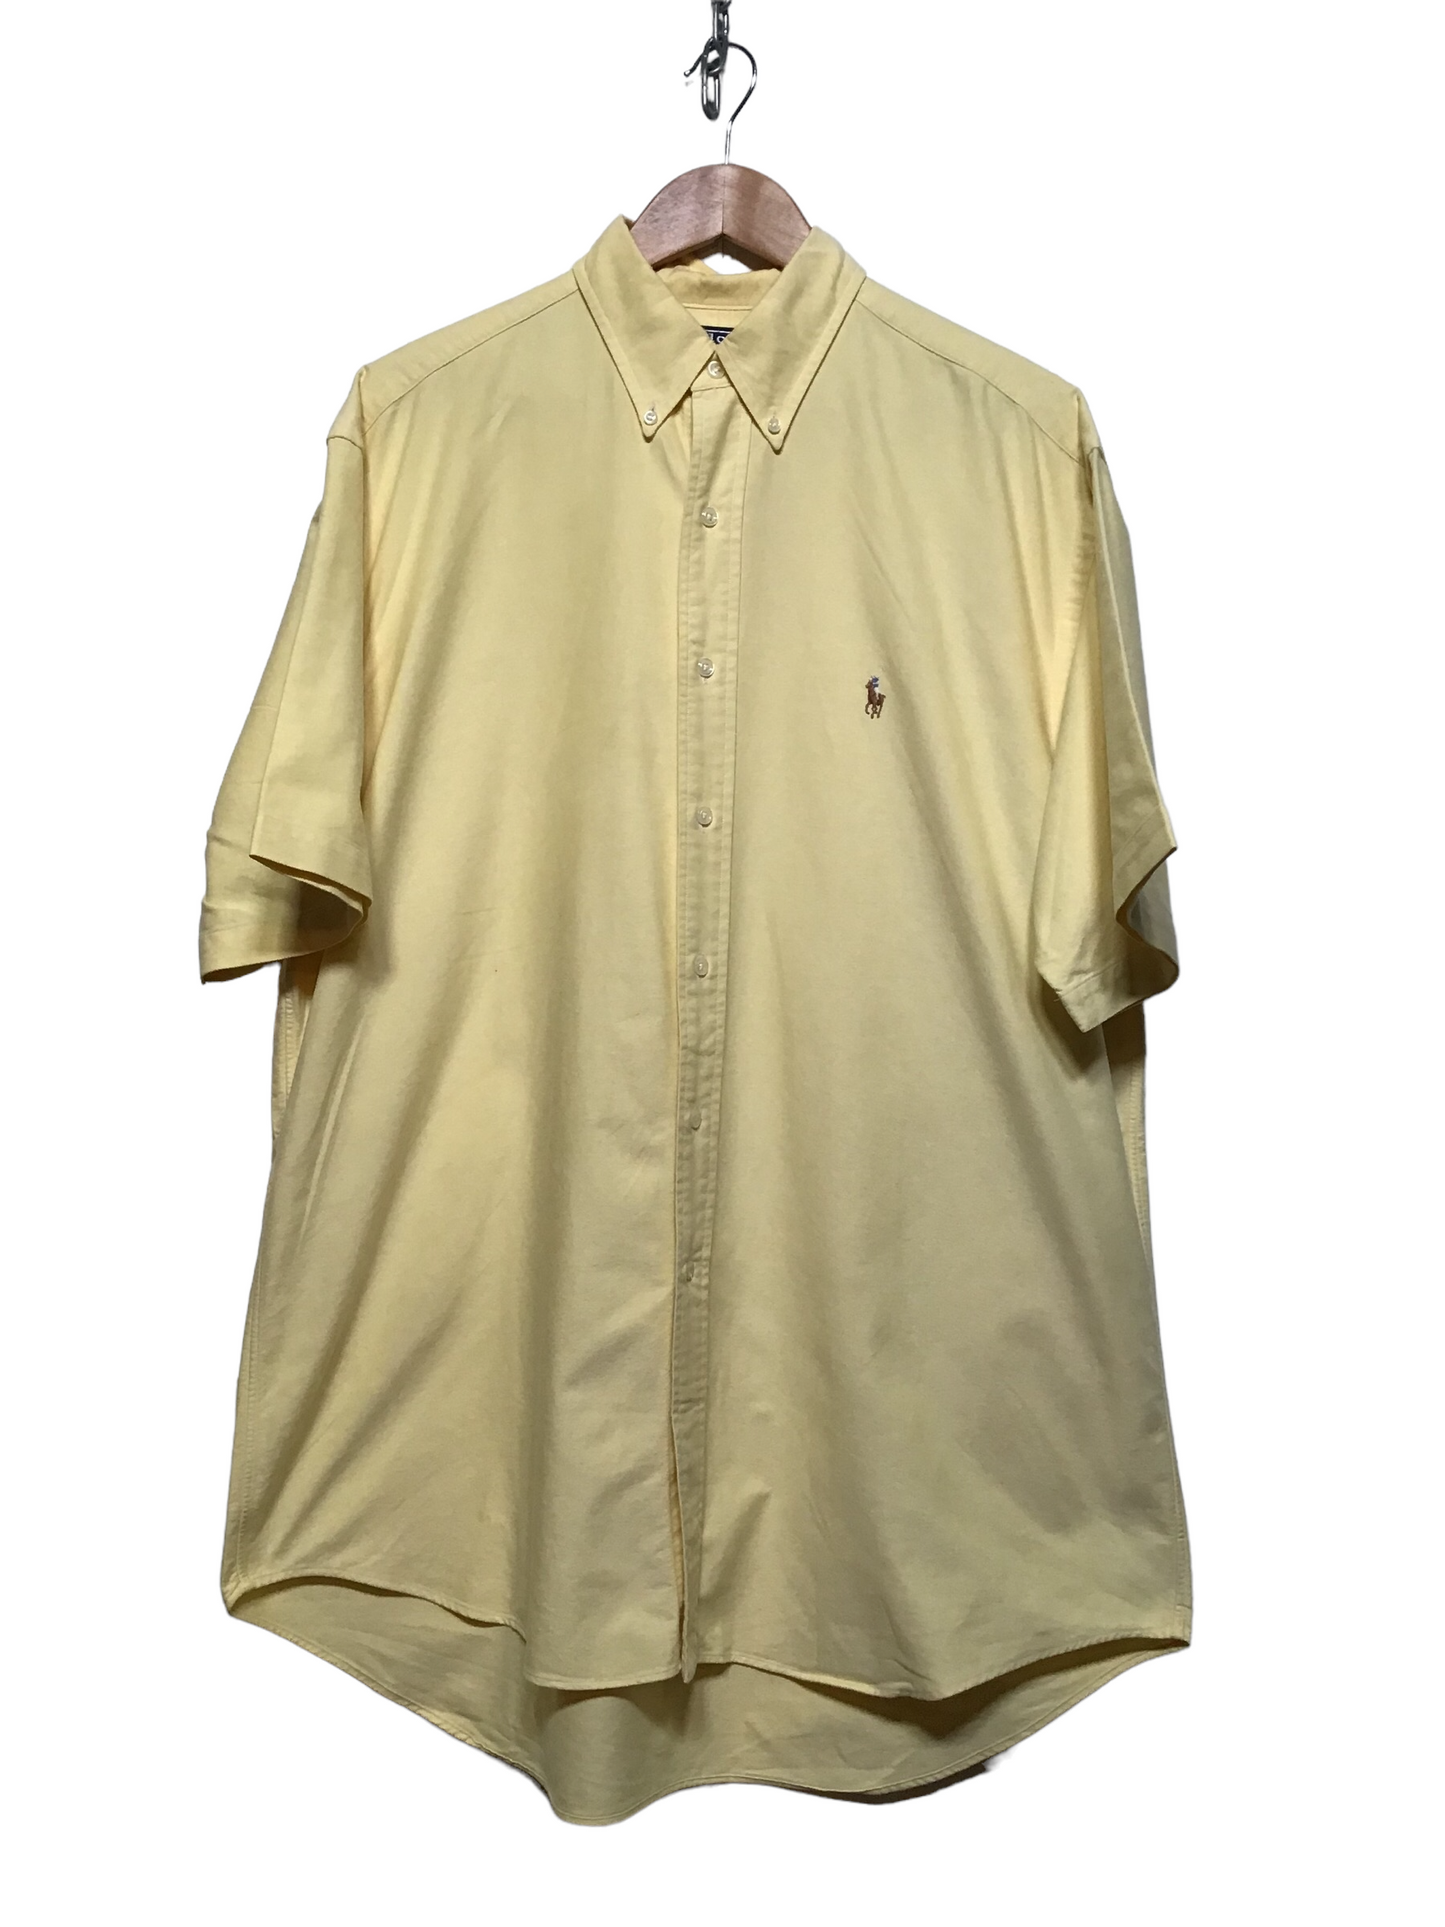 Ralph Lauren Yellow Short Sleeve Shirt (Size L)